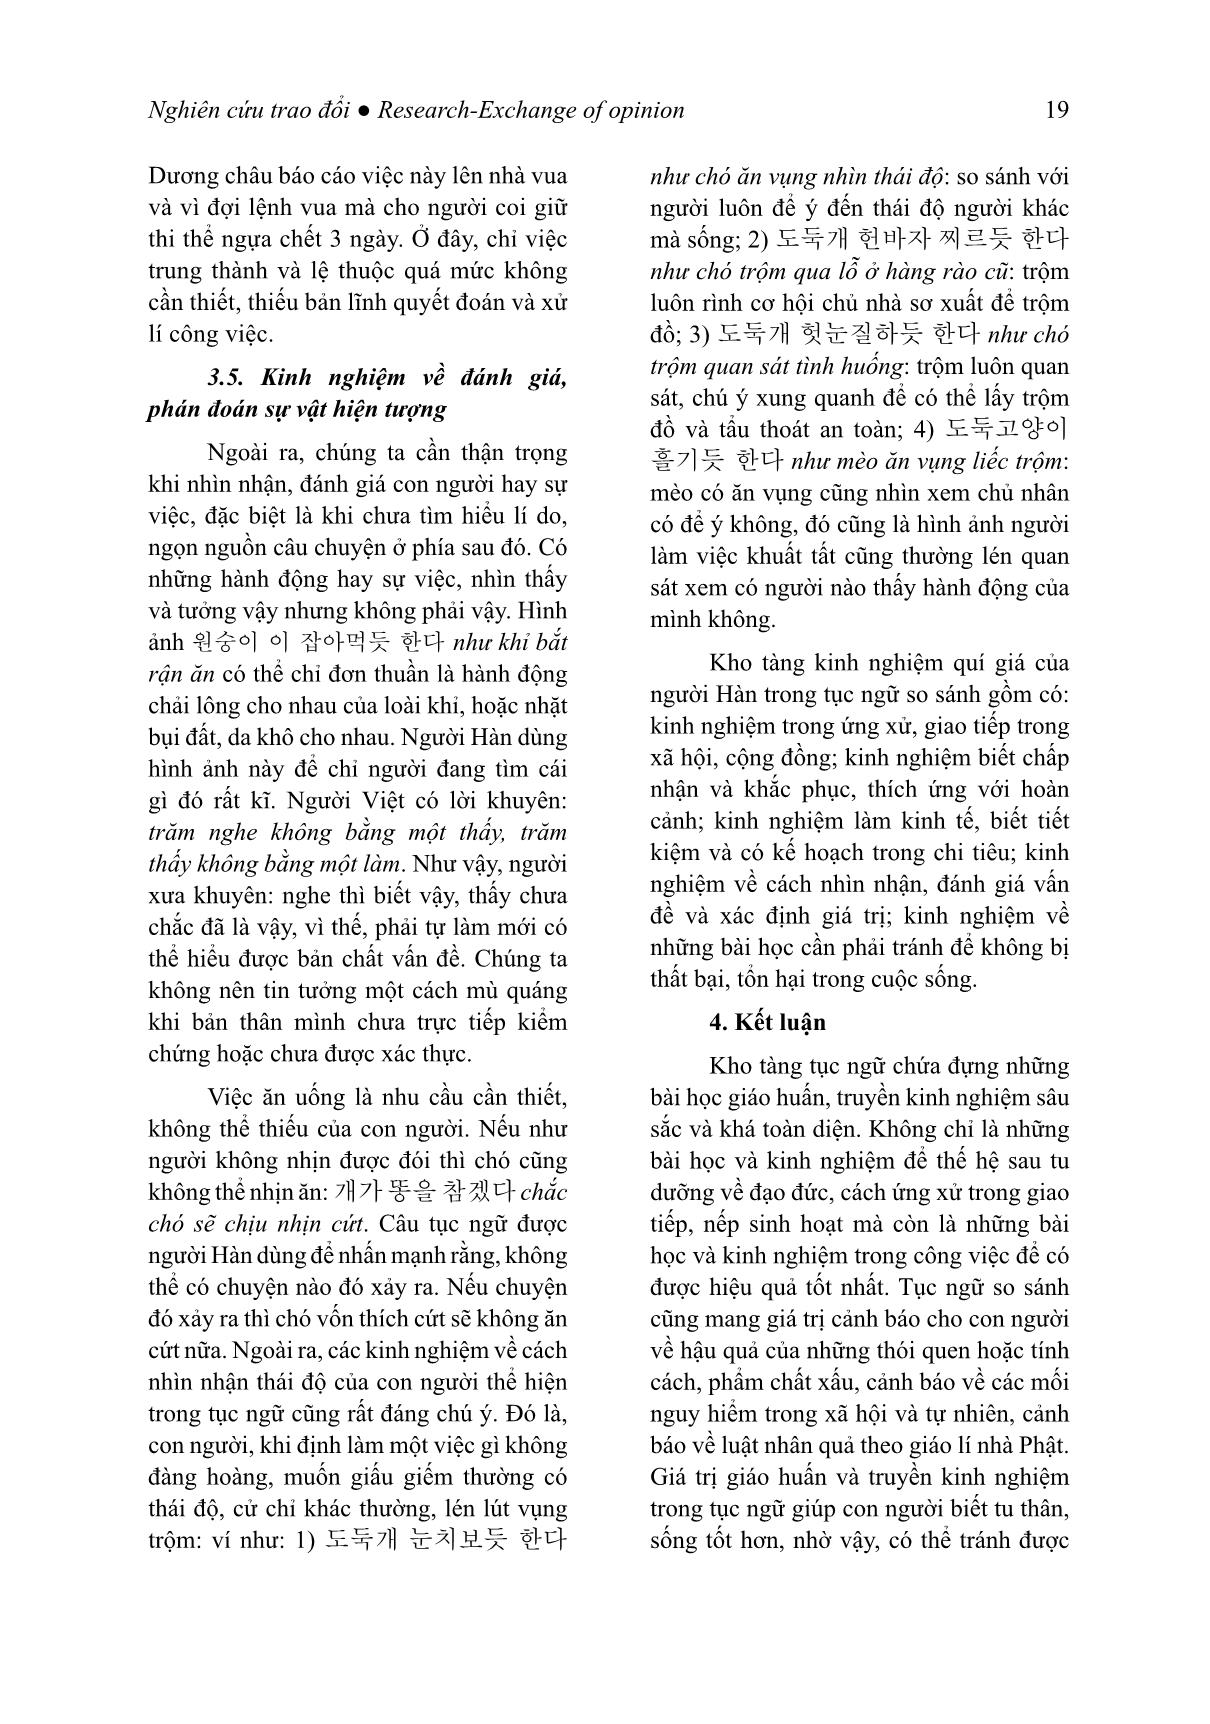 Giá trị giáo huấn của tục ngữ so sánh tiếng Hàn (Trọng tâm là các đơn vị có yếu tố chỉ con giáp) trang 10